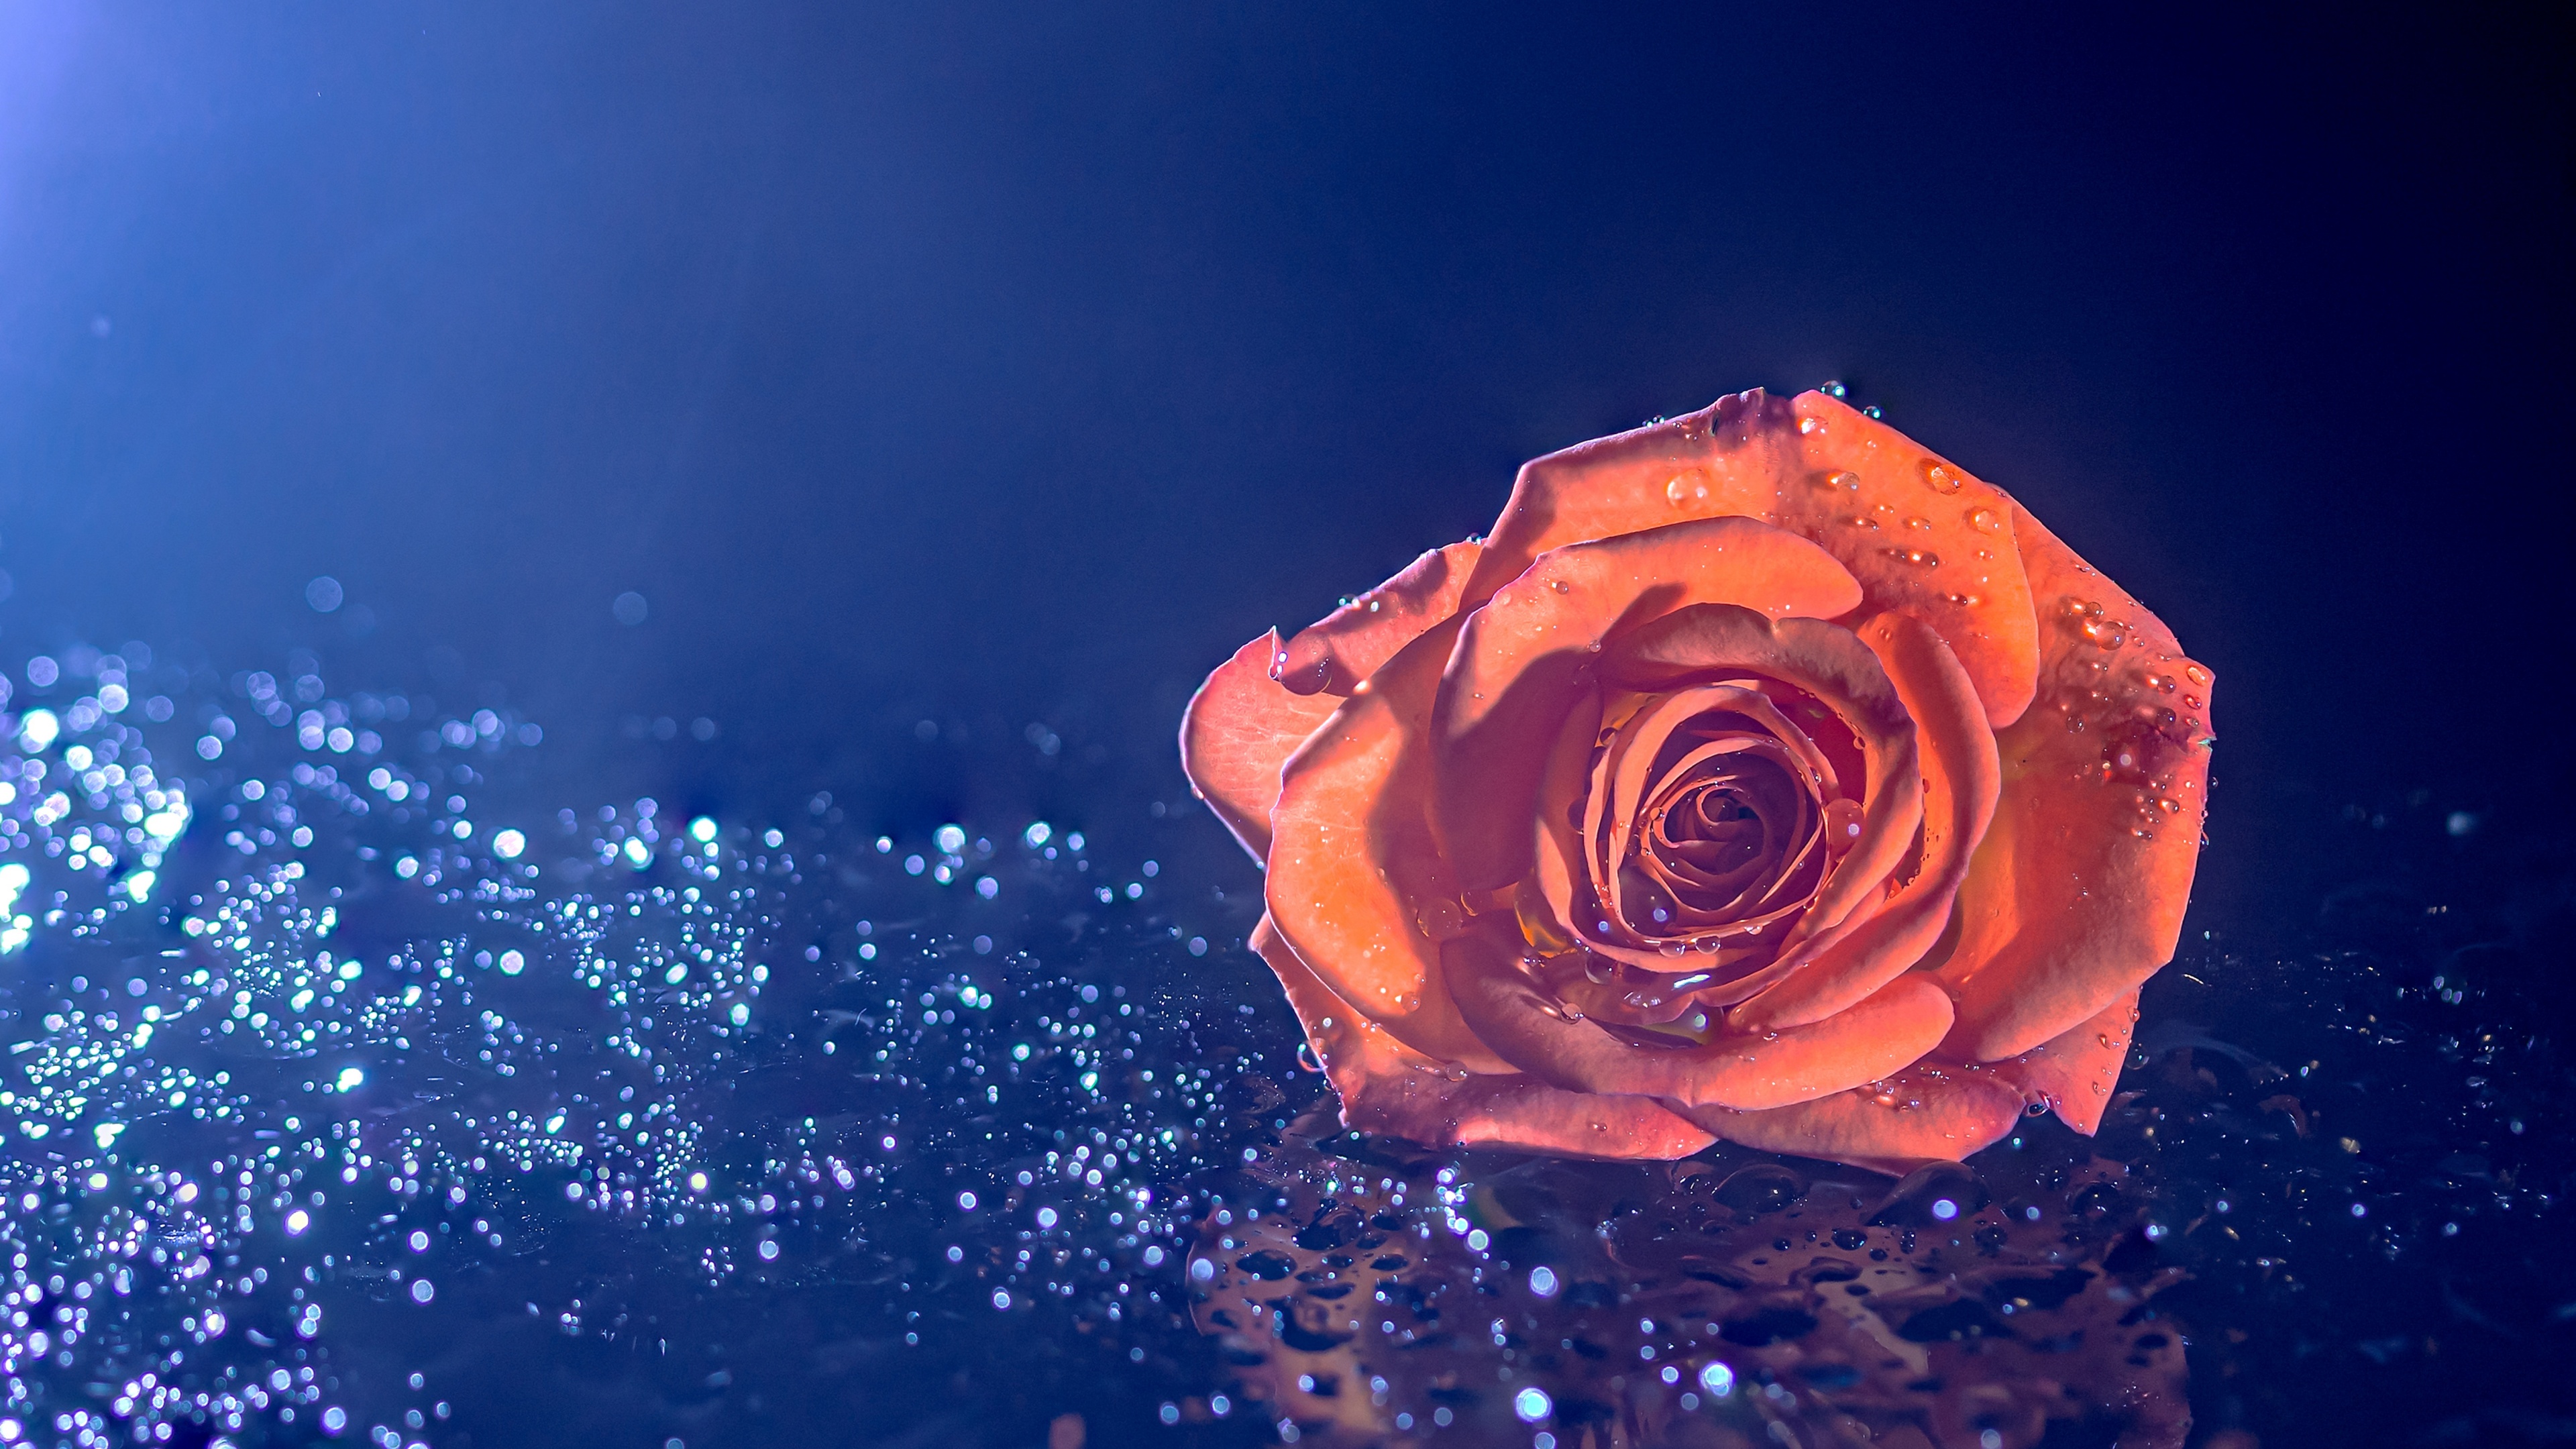 Hình nền hoa hồng cam 4K với giọt nước và mã số #1675 sẽ tạo ra một sự khác biệt cho thiết kế của bạn. Với chất lượng hình ảnh tuyệt vời và màu sắc cam rực rỡ, bạn sẽ không thể chối từ cơ hội tải về hình ảnh này.